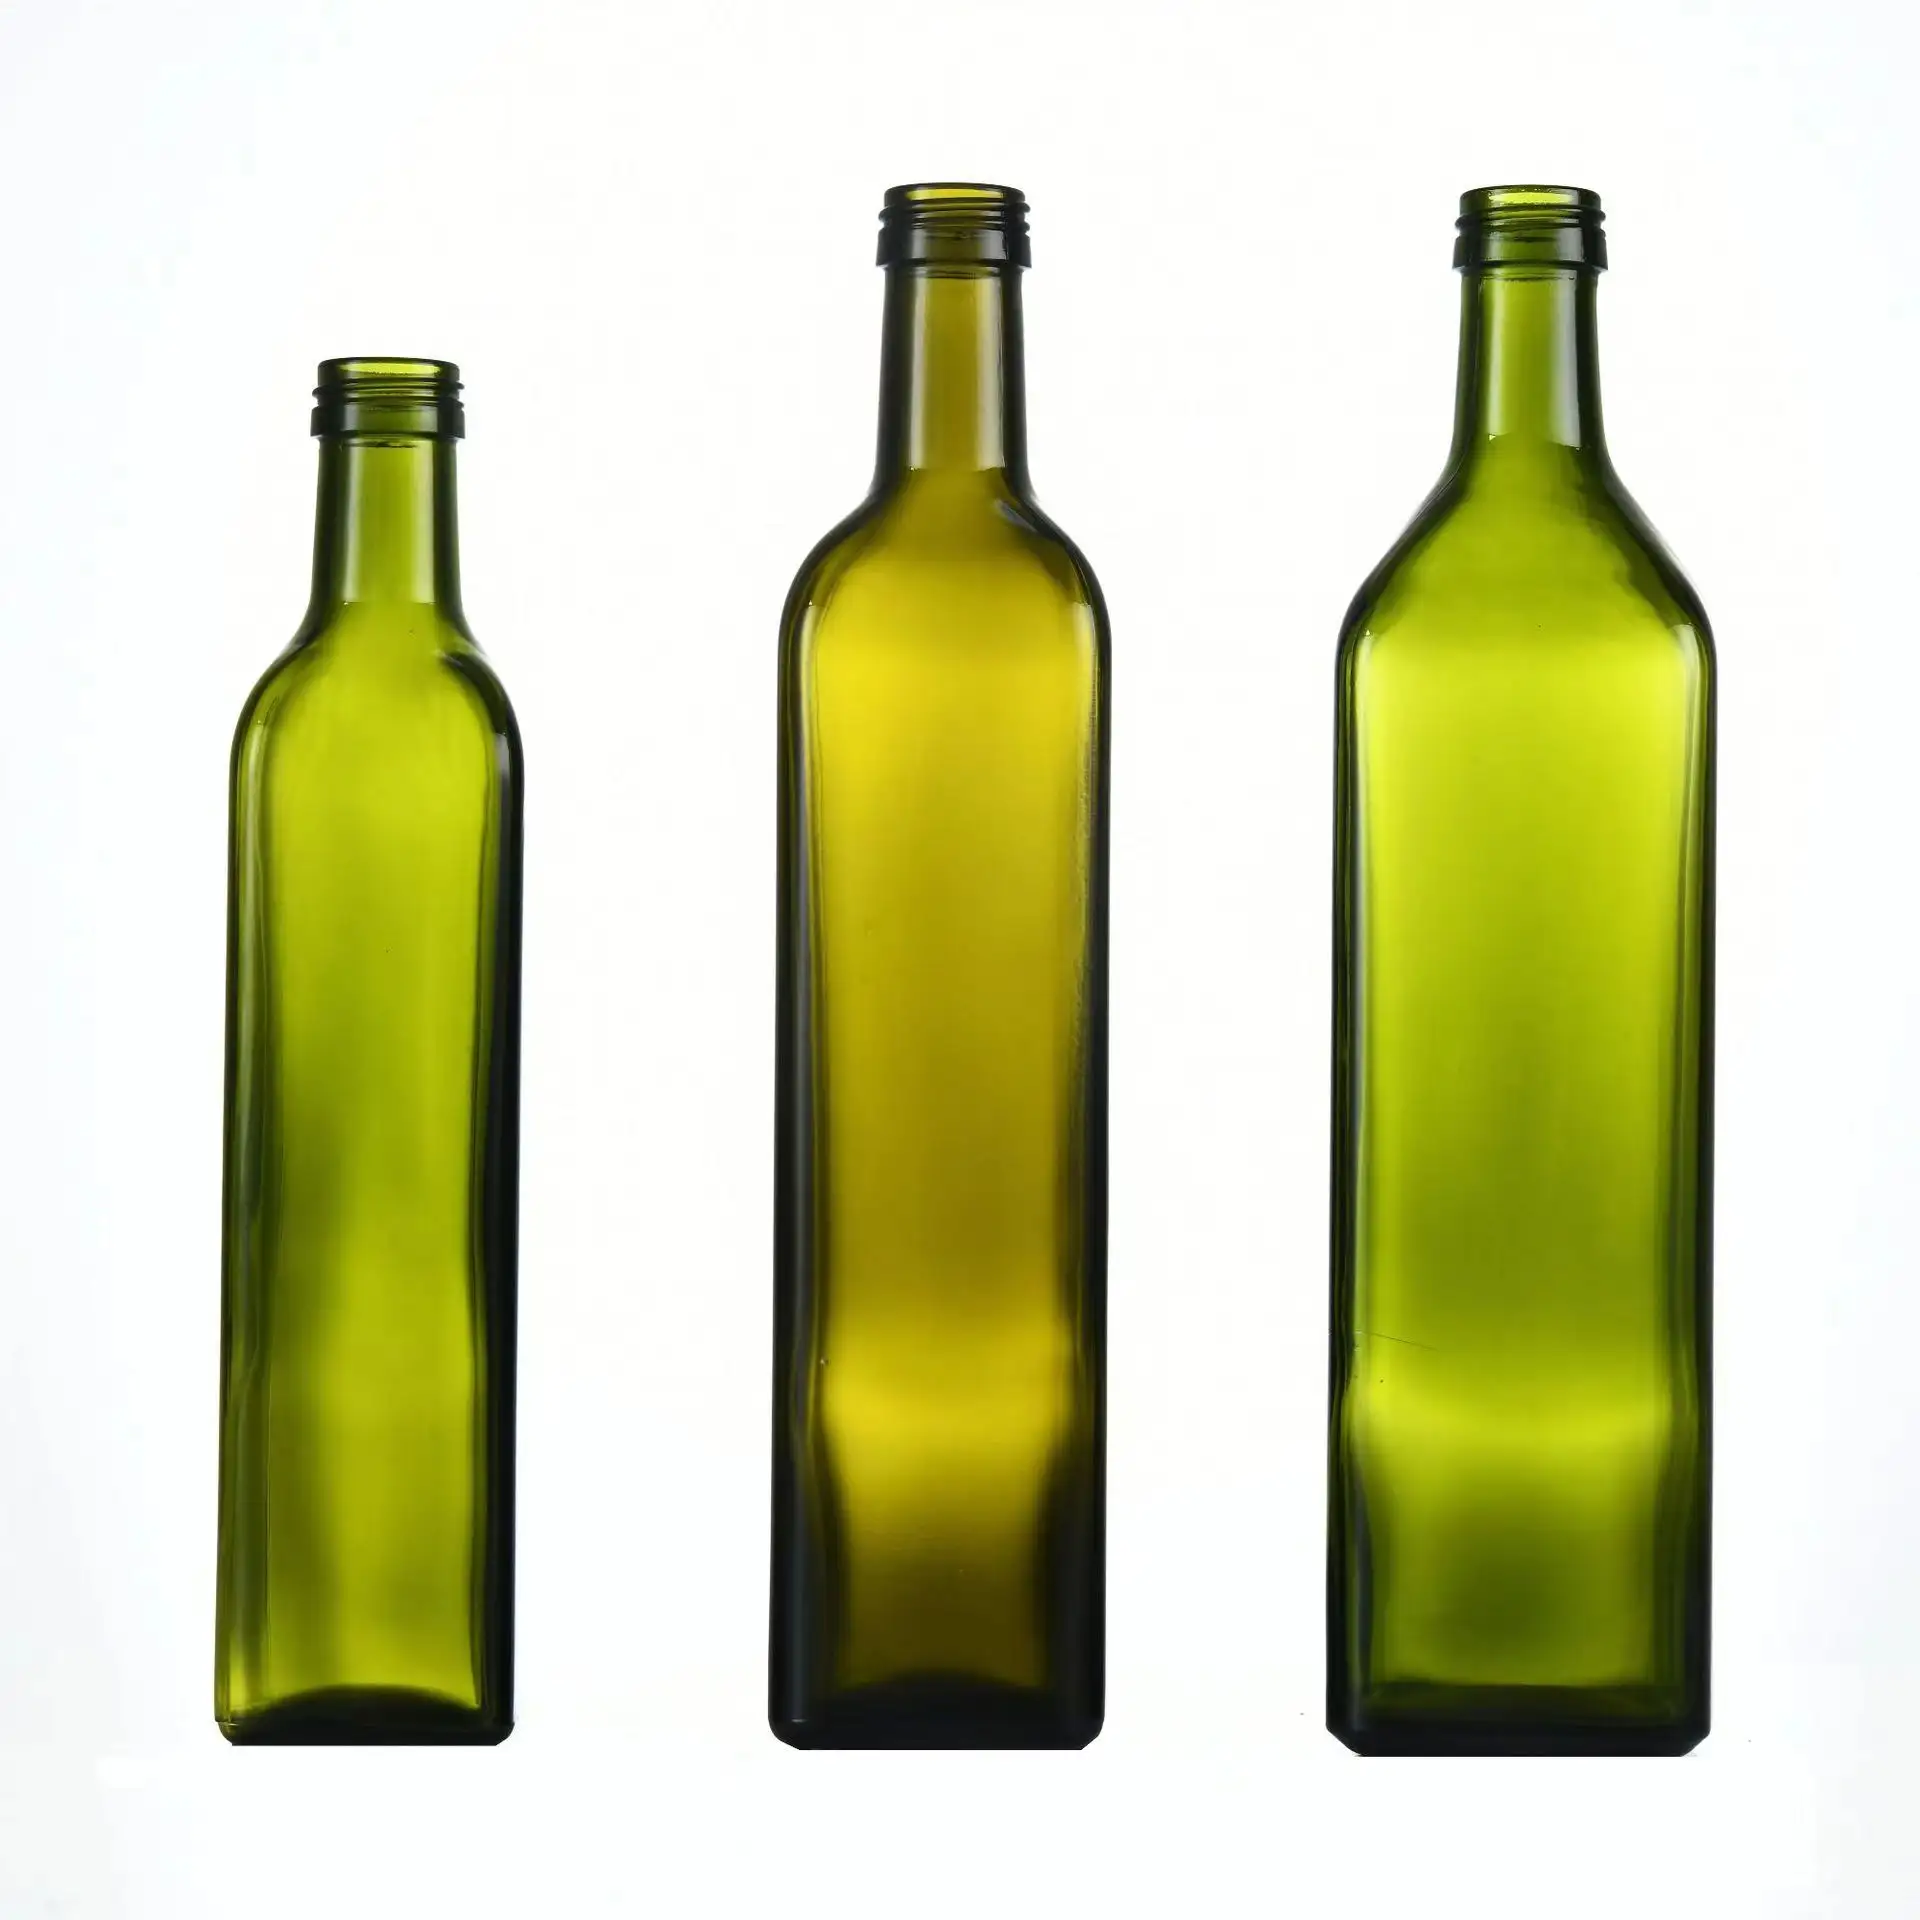 थोक सबसे अच्छा वर्ग 100ml 250ml 500ml 750ml सील गहरे हरे रंग के साथ खाद्य गिलास जैतून तेल की बोतल ढक्कन